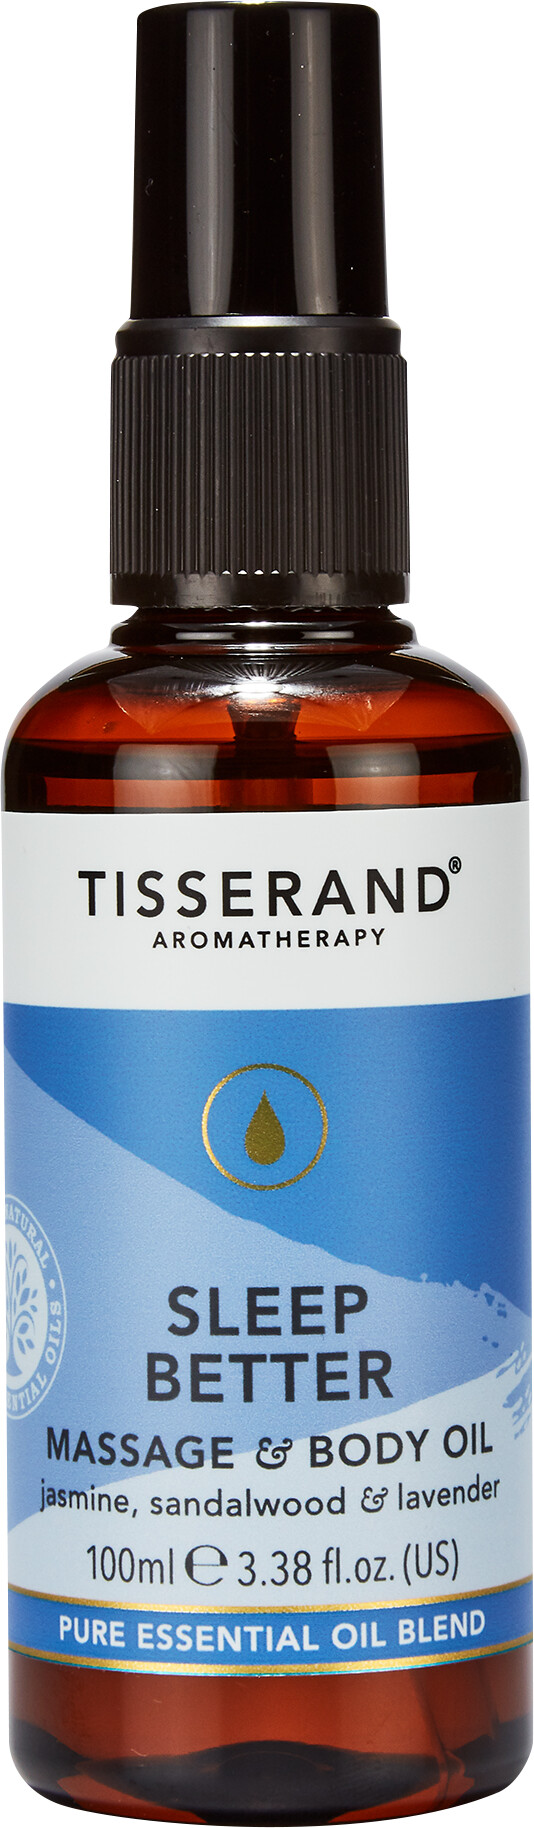 Tisserand Aromatherapy Sleep Better Massage & Body Oil 100ml